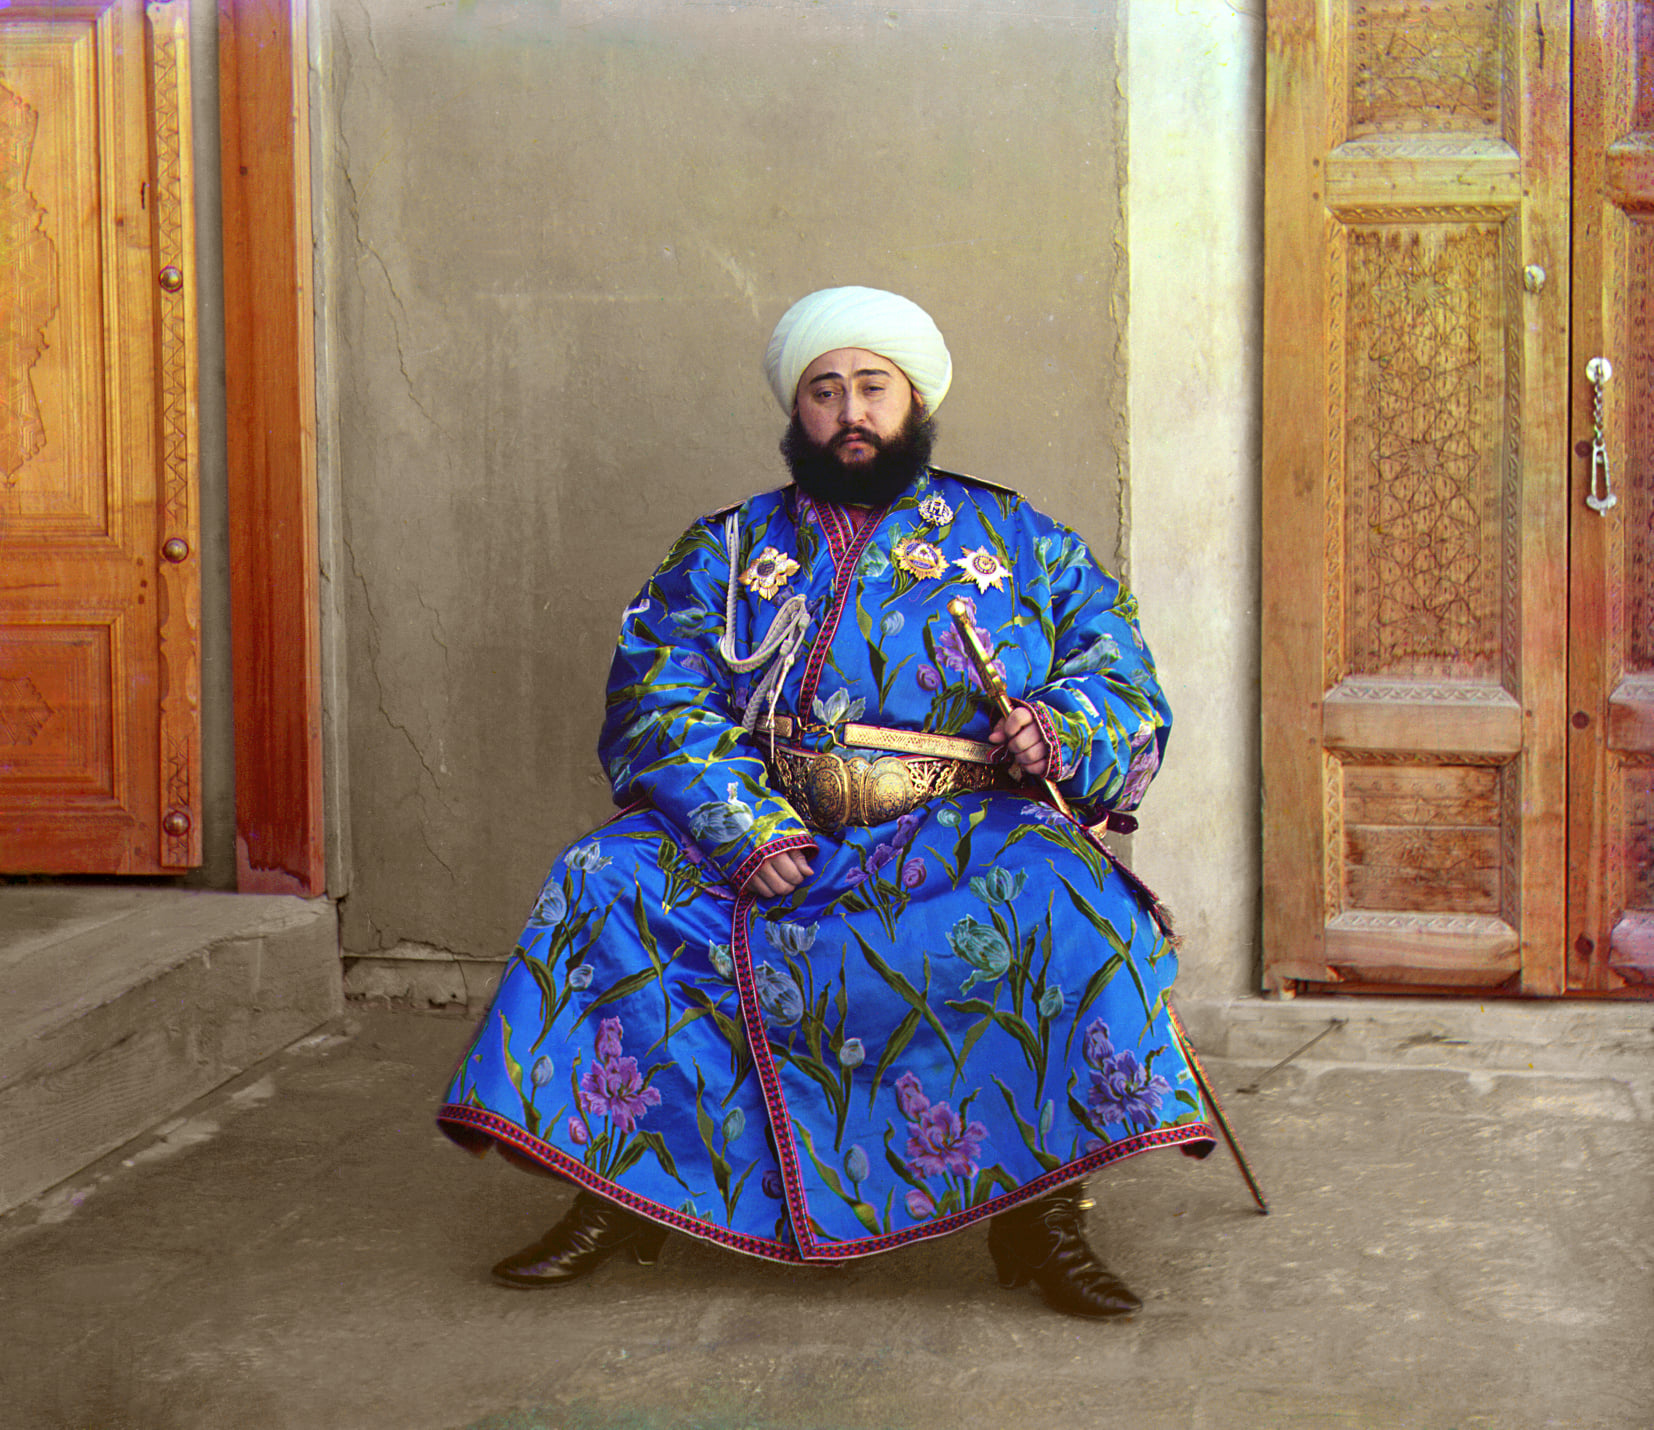 سيد عالم خان آخر أمراء إماراة بخارى، حكم بخارى عام 1911م إلى العام 1920م.